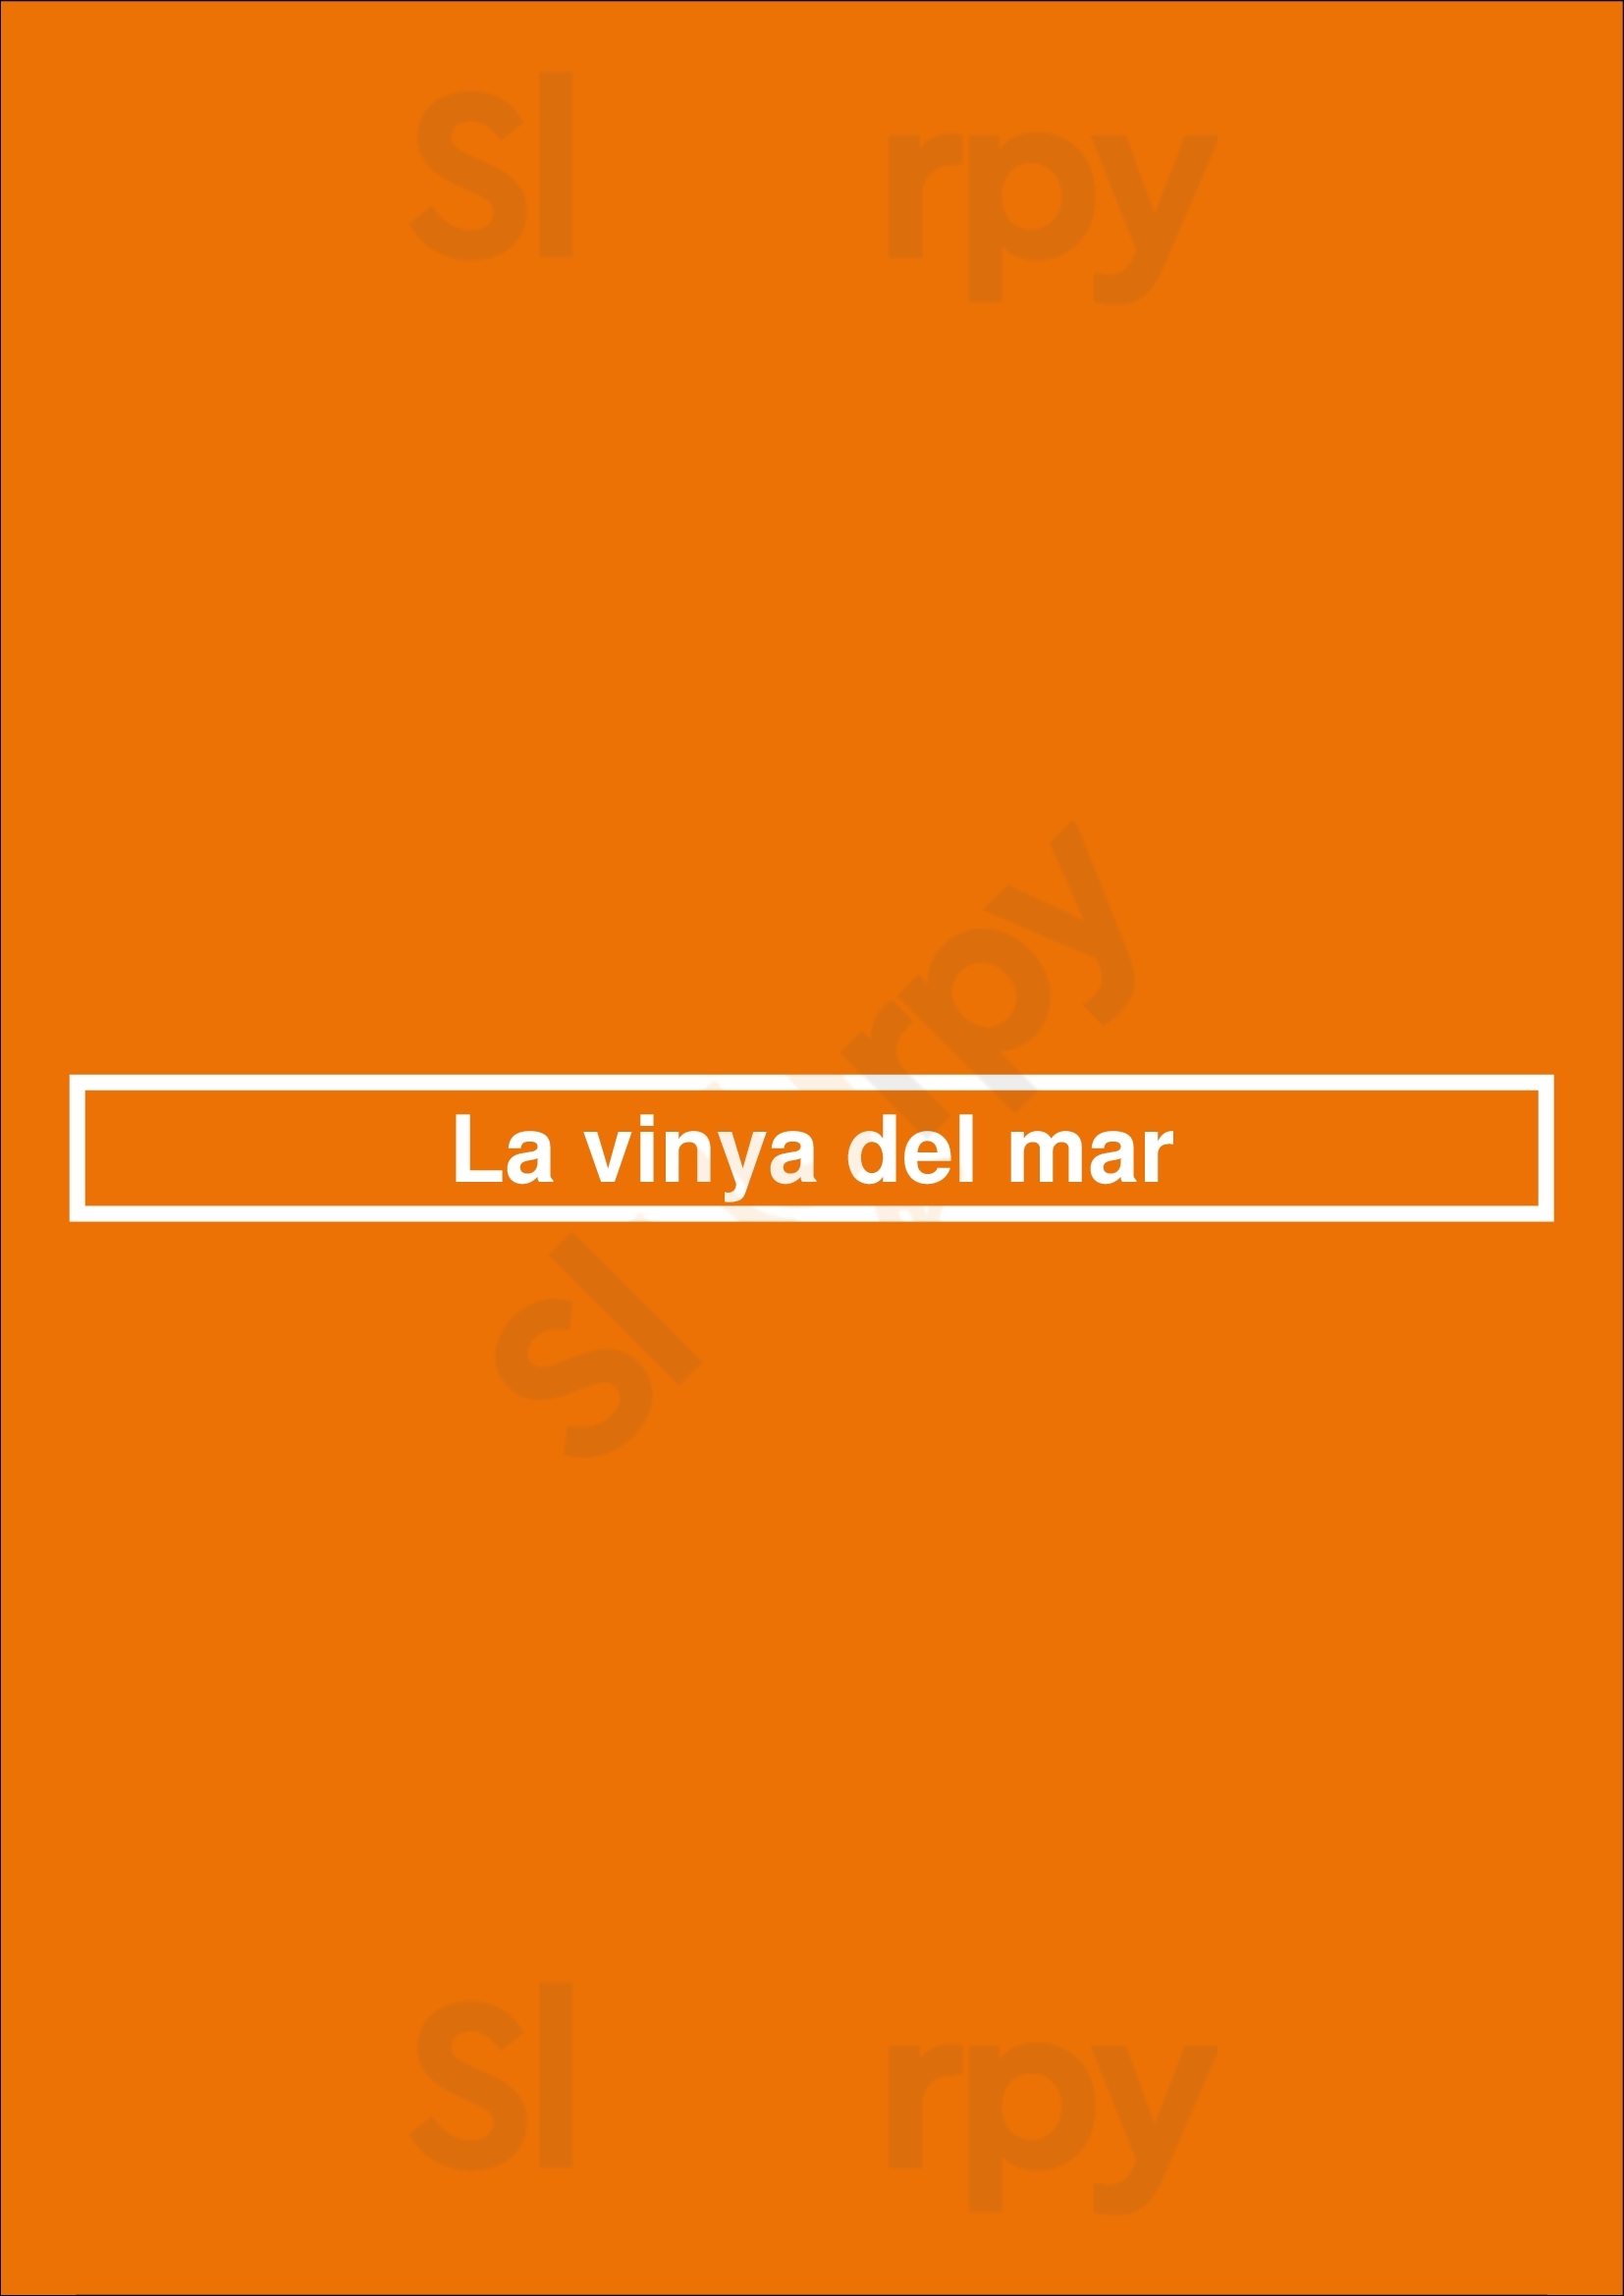 La Vinya Del Mar Vilafranca del Penedès Menu - 1